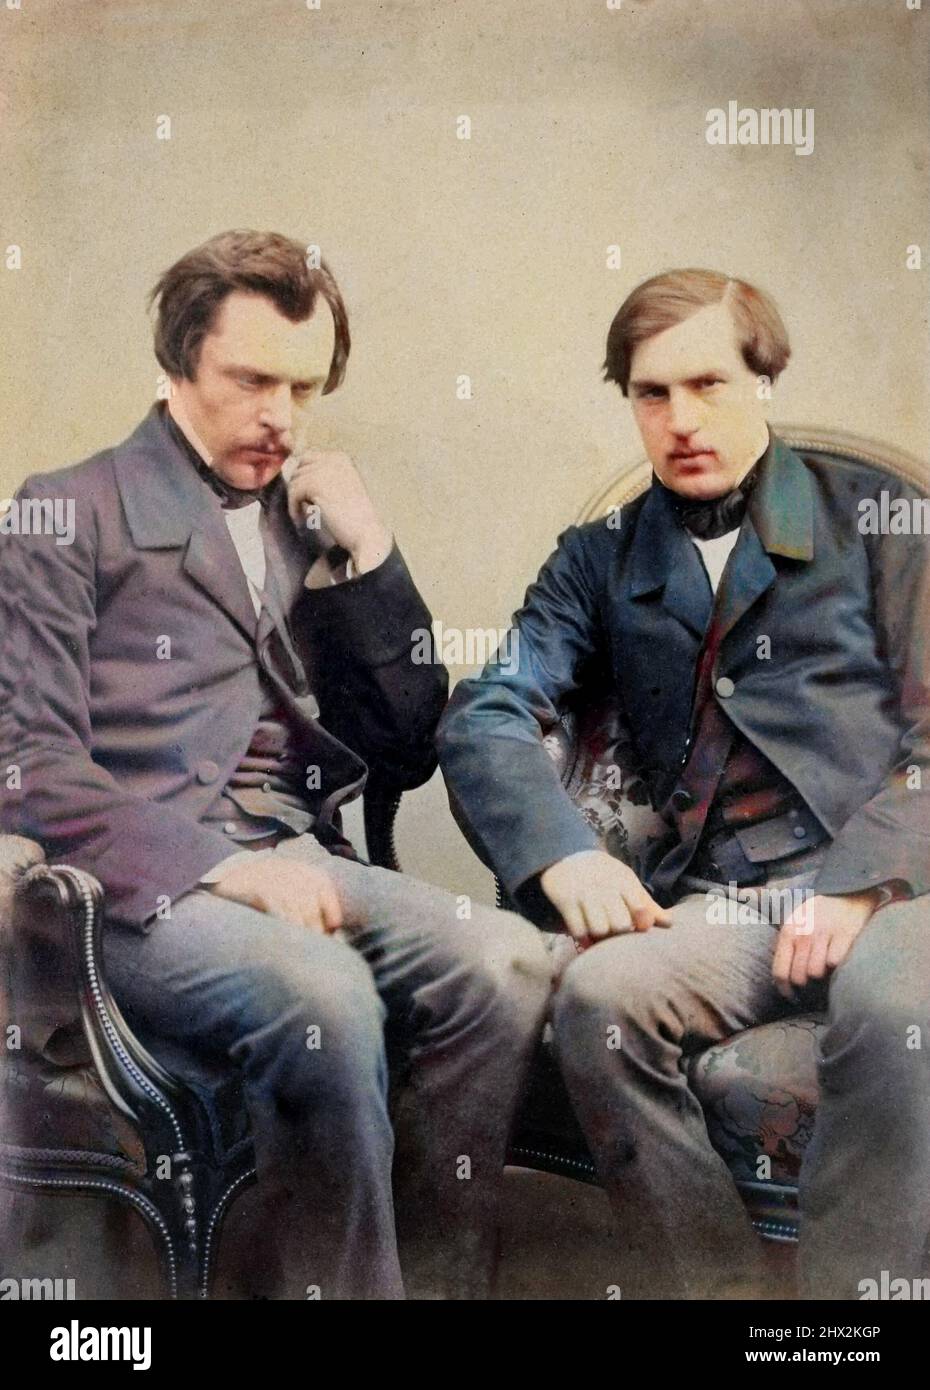 Les freres Edmond de Goncourt (1822-1896) et Jules de Goncourt (1830-1870) critiques litteraires et ecrivins francais, vers 1855 Banque D'Images